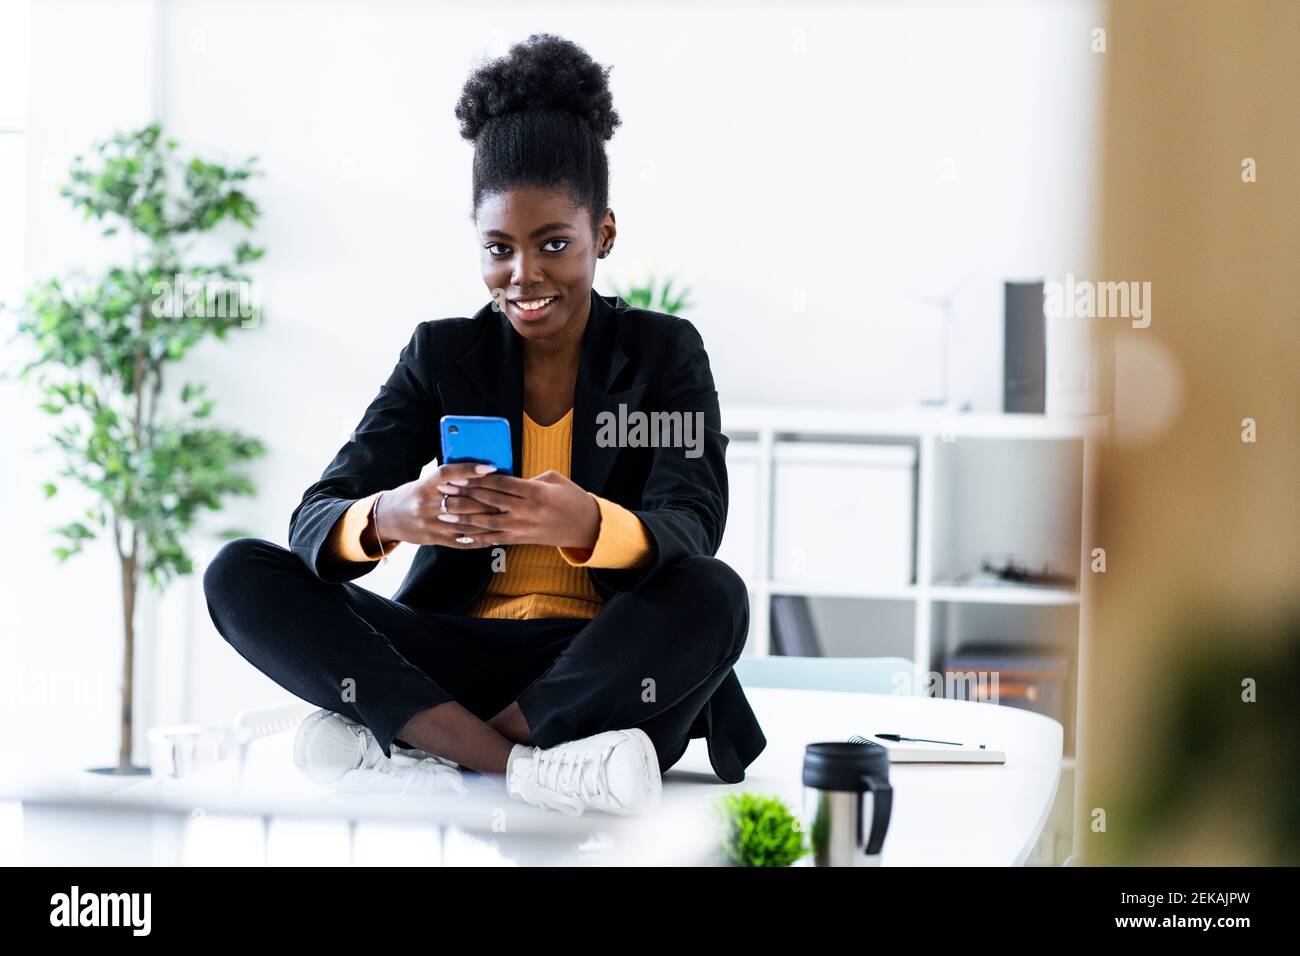 Lächelnd junge Afro weibliche professionelle Textnachrichten mit Handy Auf dem Schreibtisch sitzend mit gekreuzten Beinen Stockfoto